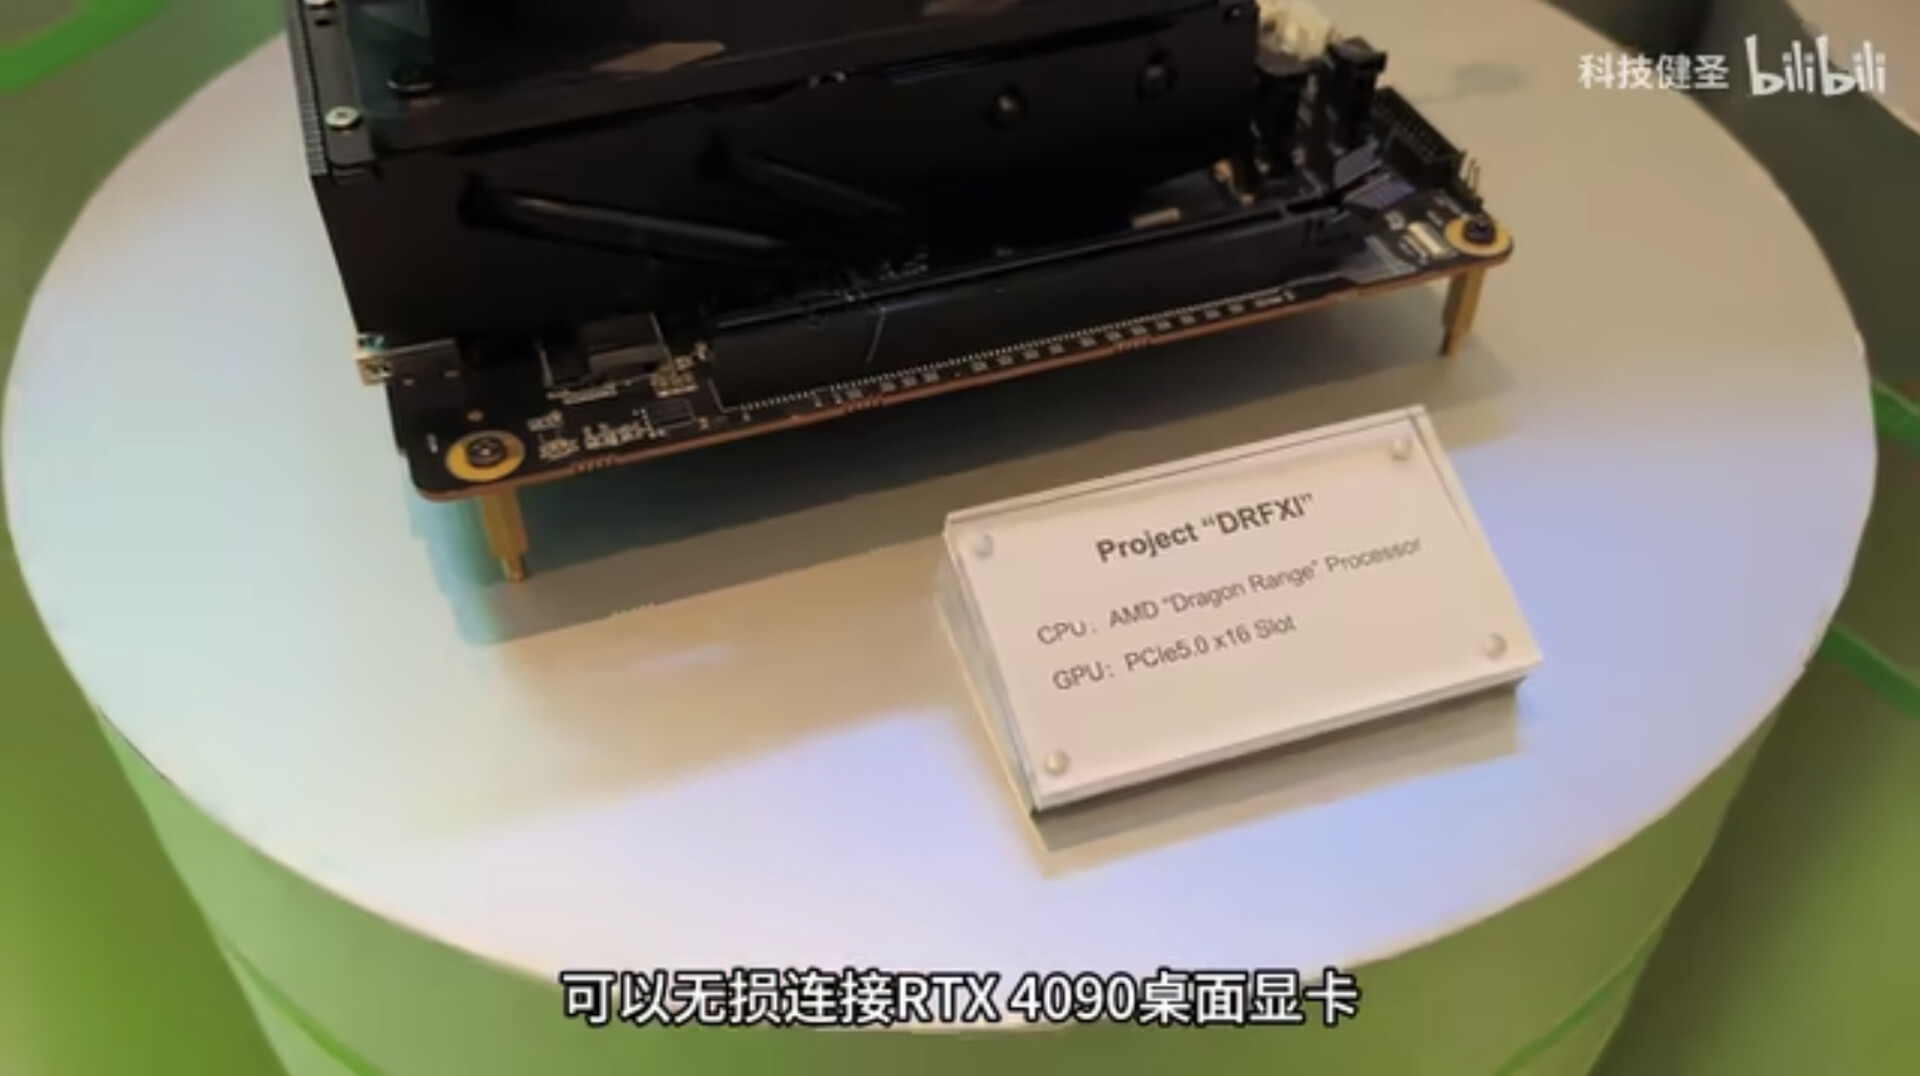 Minisforum Shows Off Mini-ITX Boards With 16-Core AMD Dragon Range &  24-Core Intel Raptor Lake-HX Mobile CPUs